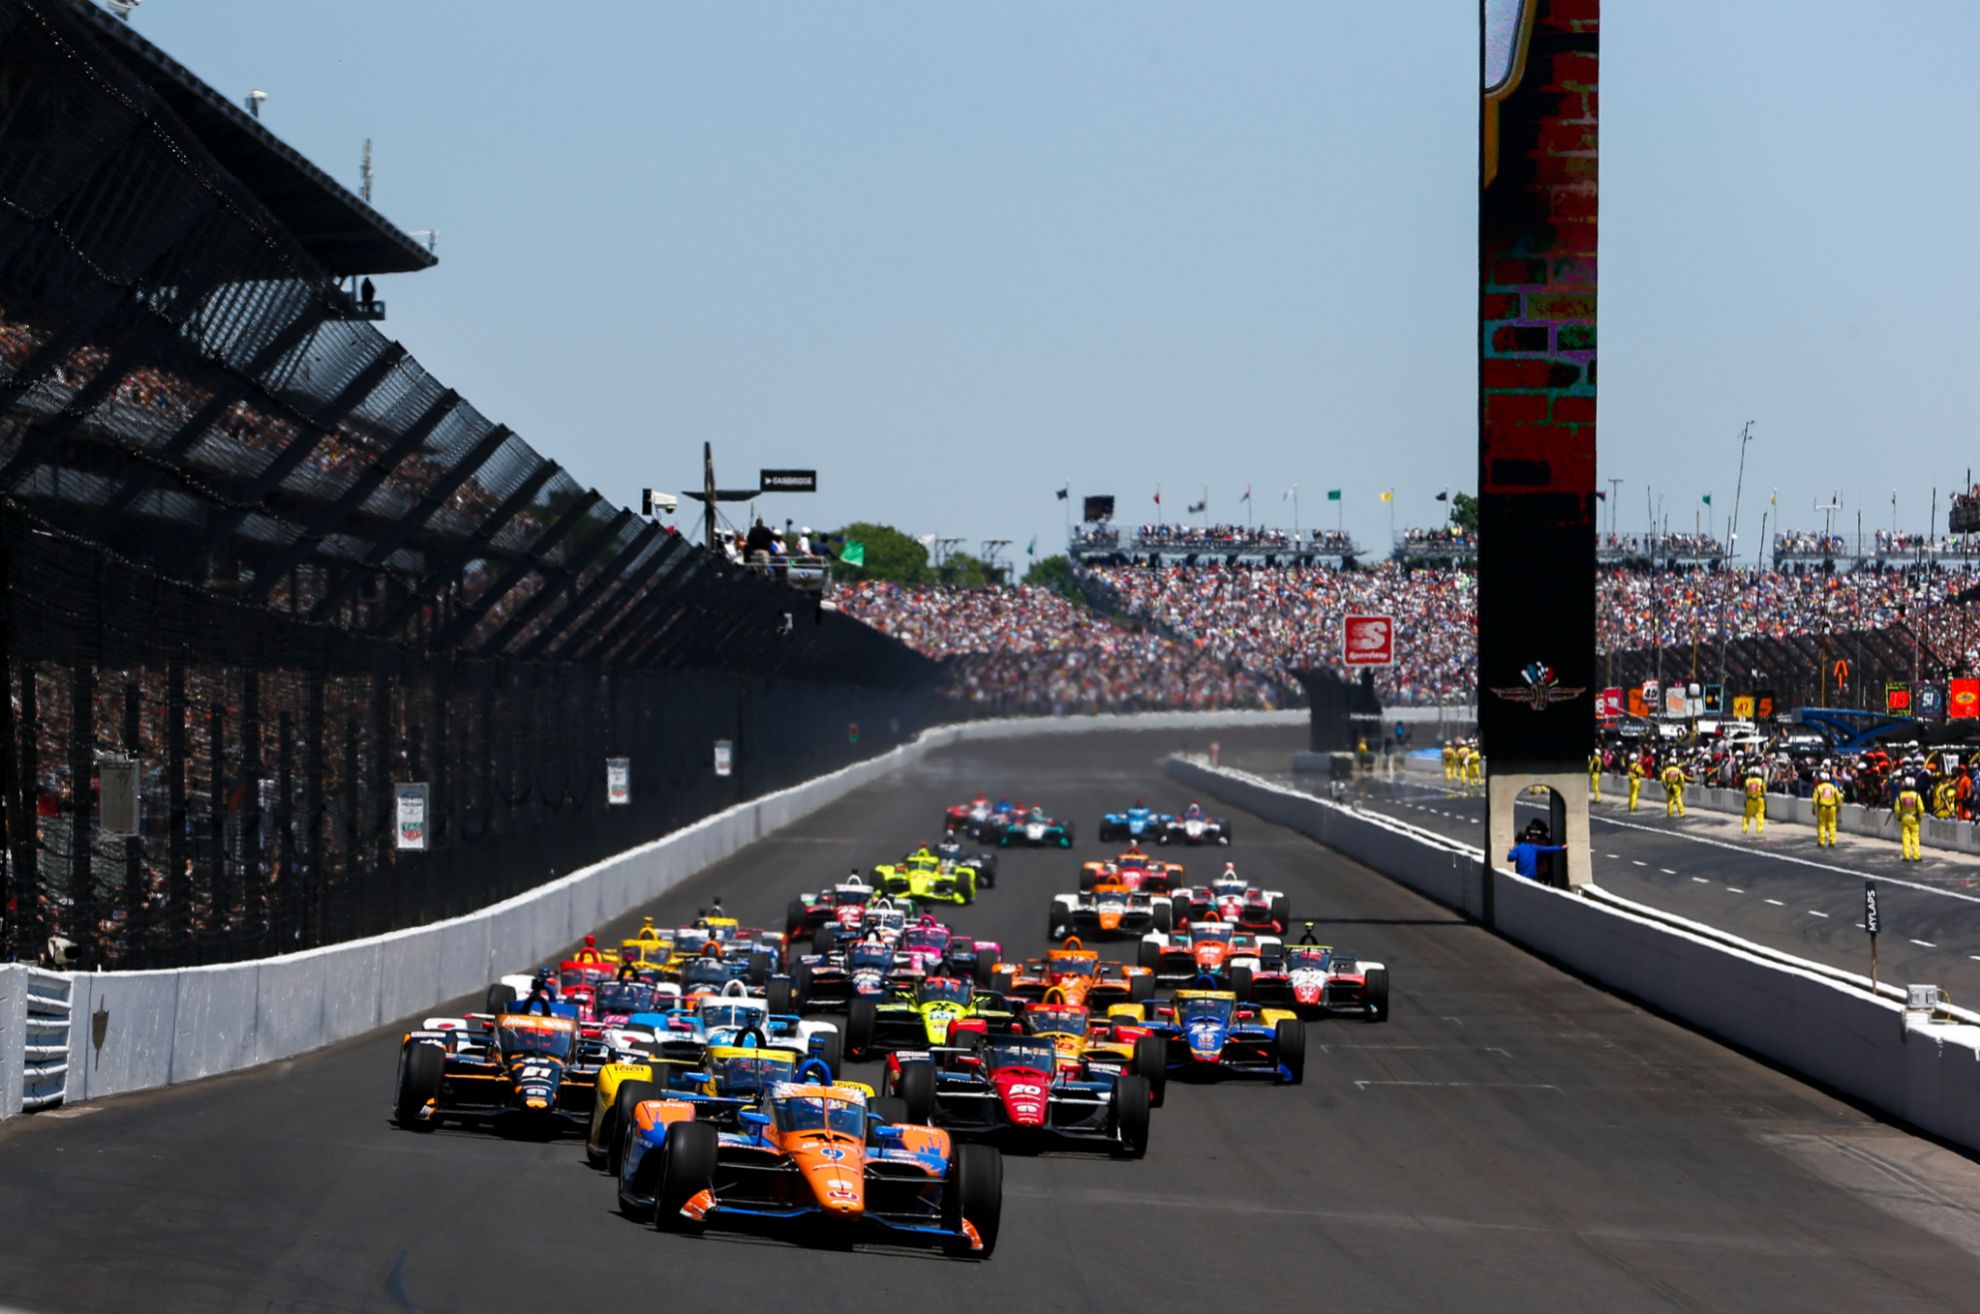 Indy 500 - 500 Millas de Indianapolis - horarios - television - donde ver - Helio Castroneves - Indycar